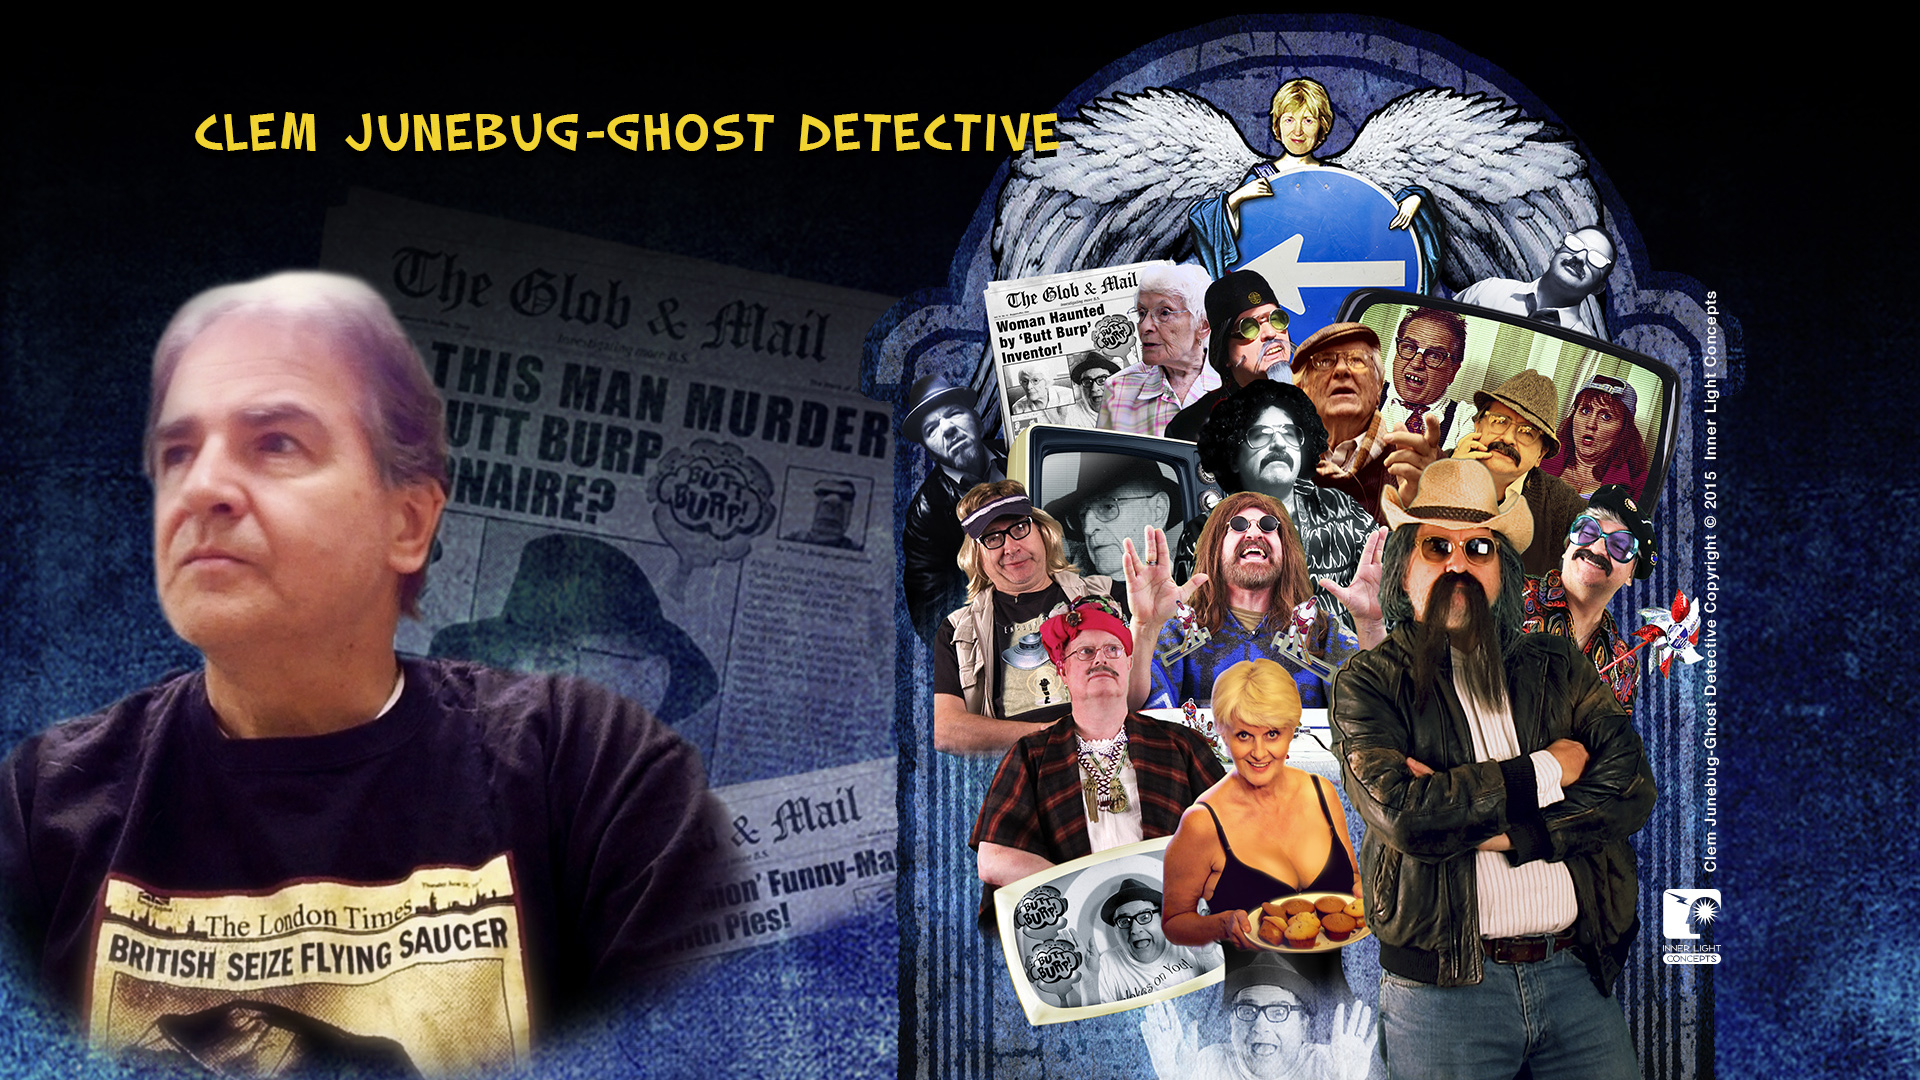 Clem JunebugGhost Detective (myself and cast of characters).